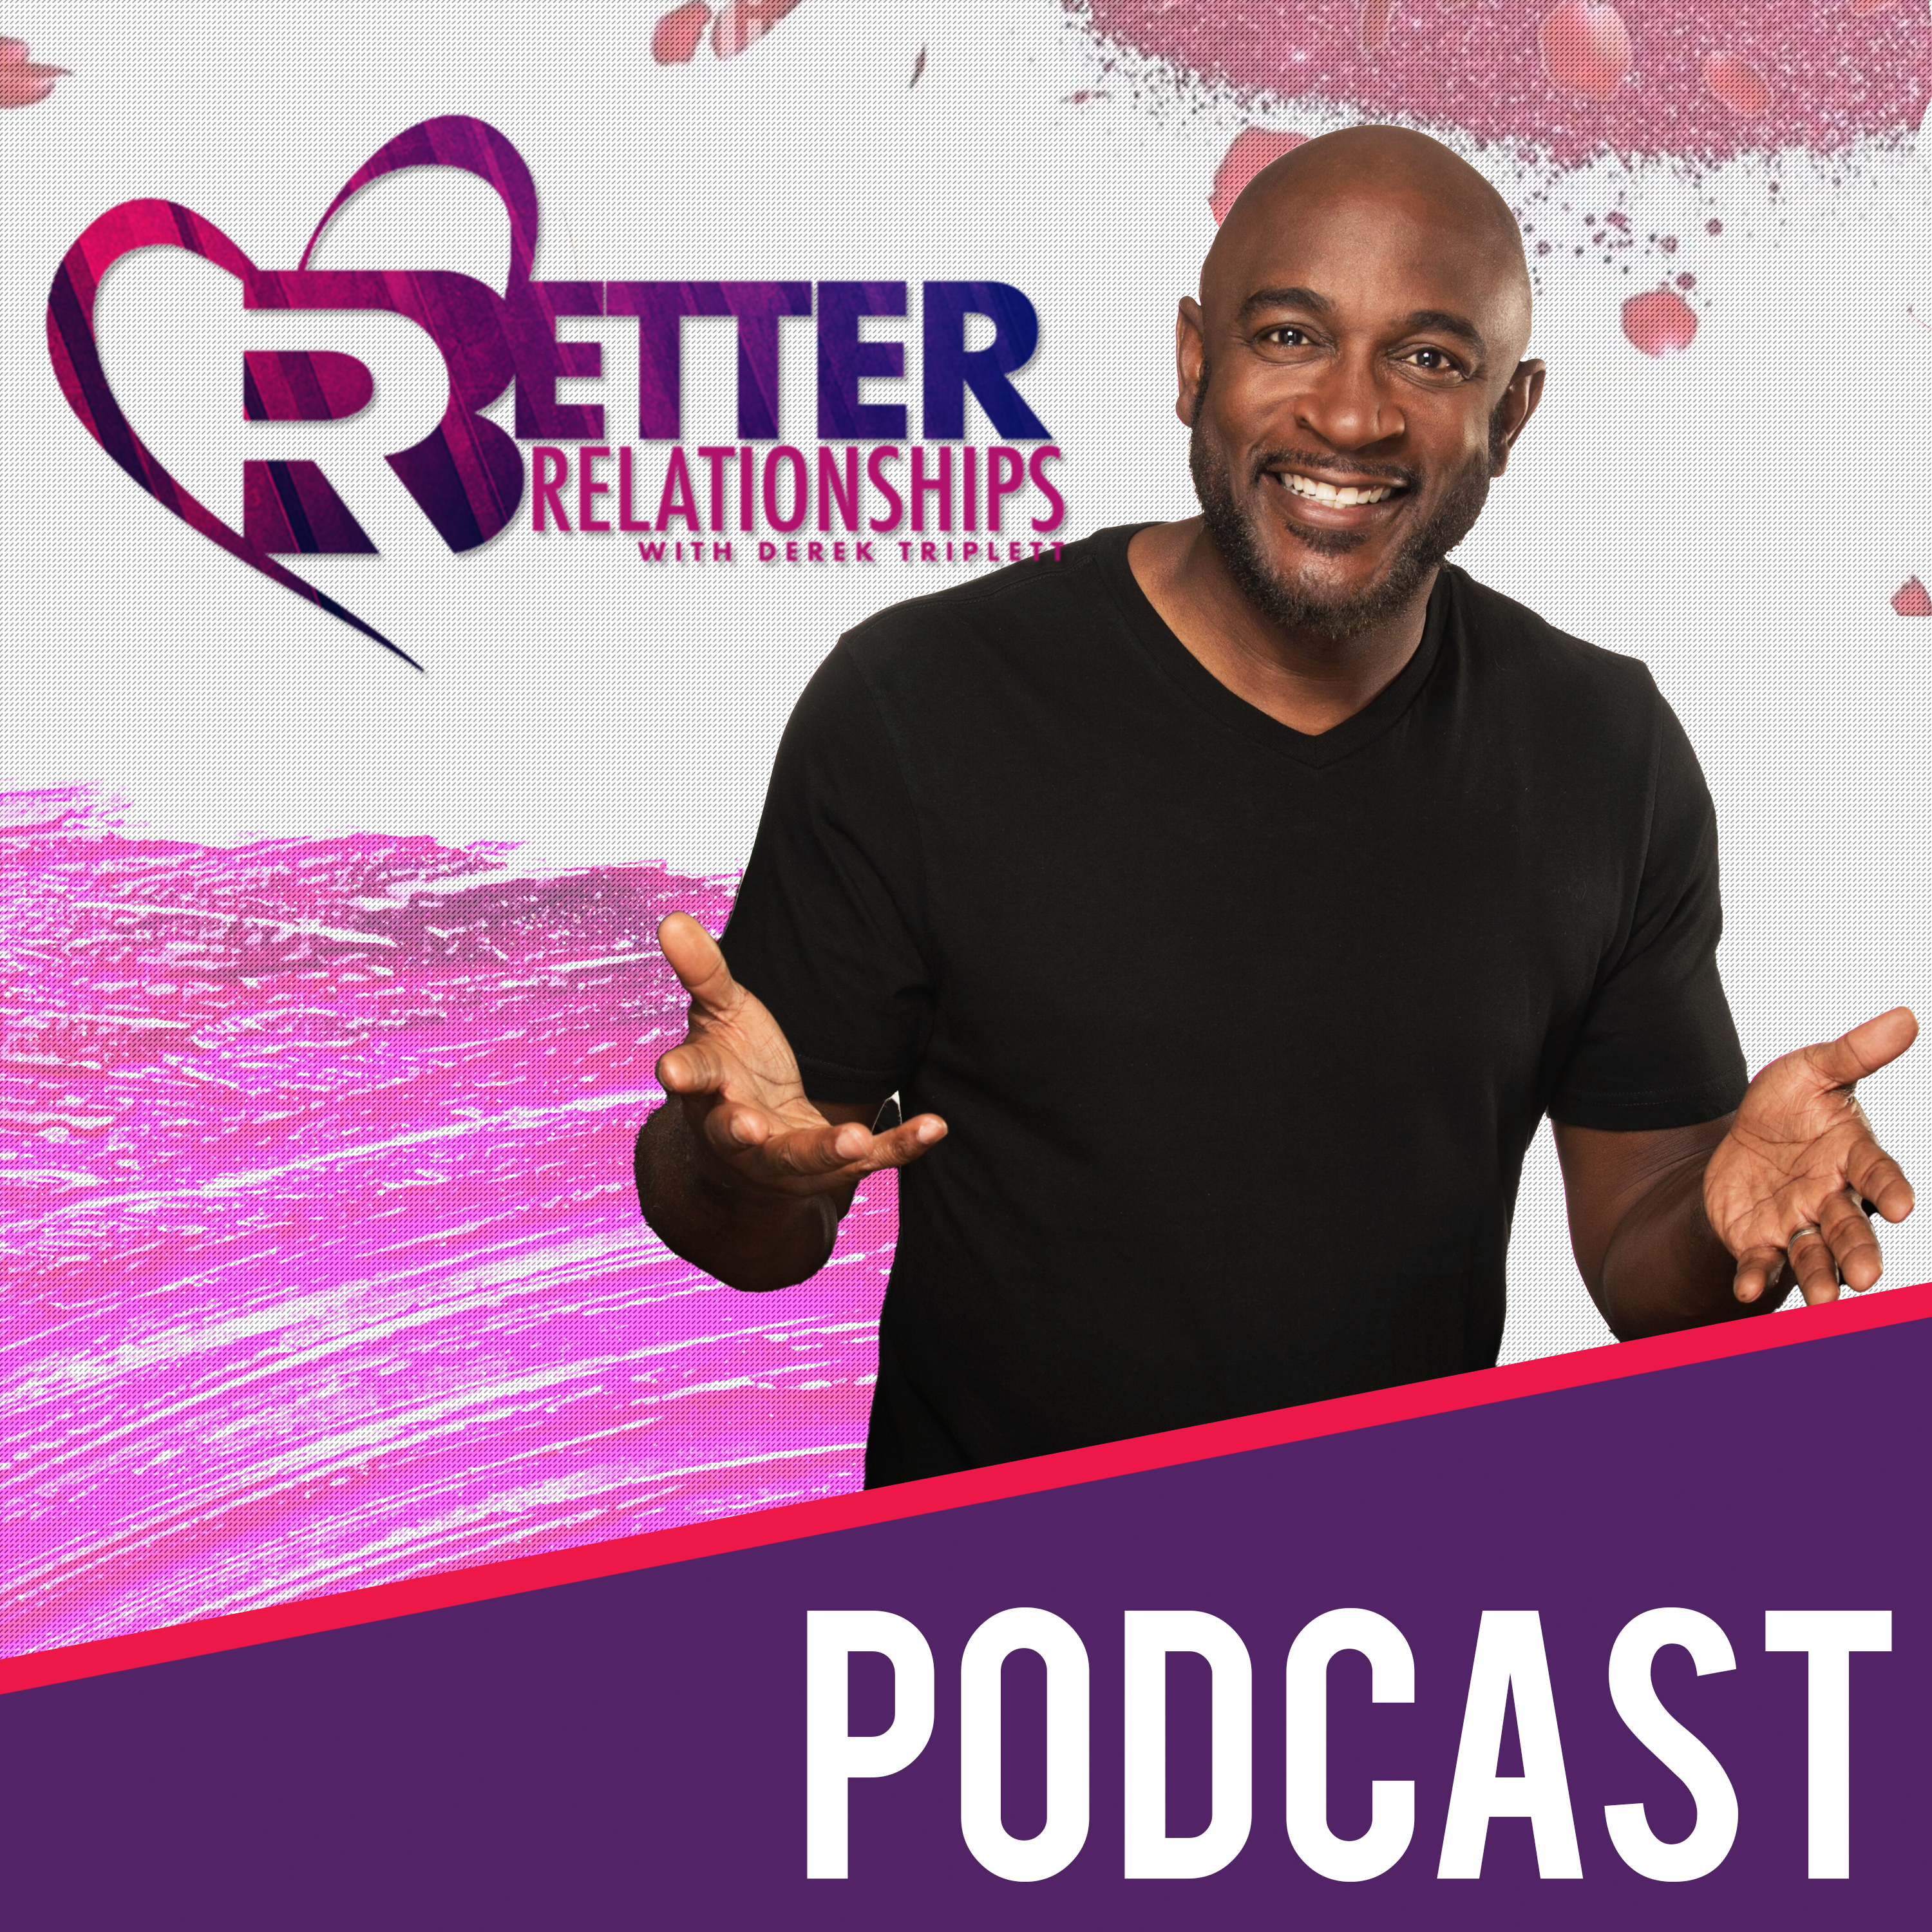 Better Relationships Podcast - Derek Triplett